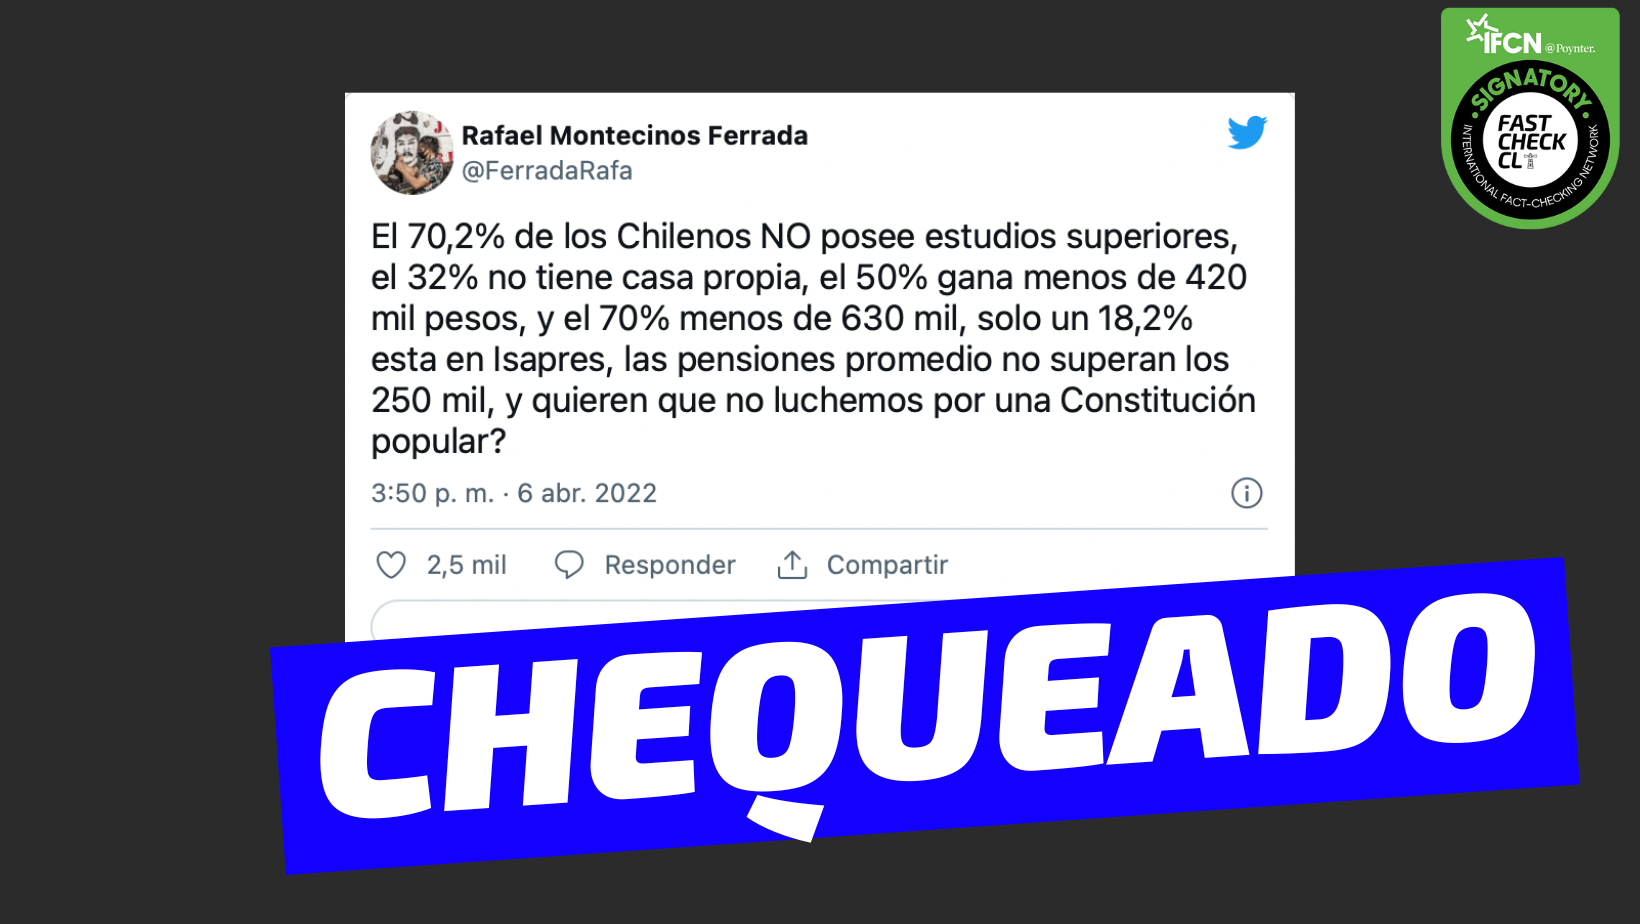 You are currently viewing “El 70,2% de los chilenos no posee estudios superiores, el 32% no tiene casa propia, el 50% gana menos de 420 mil pesos, el 70% menos de 630 mil, un 18,2% está en Isapres y las pensiones promedio no superan los 250 mil”: #Chequeado